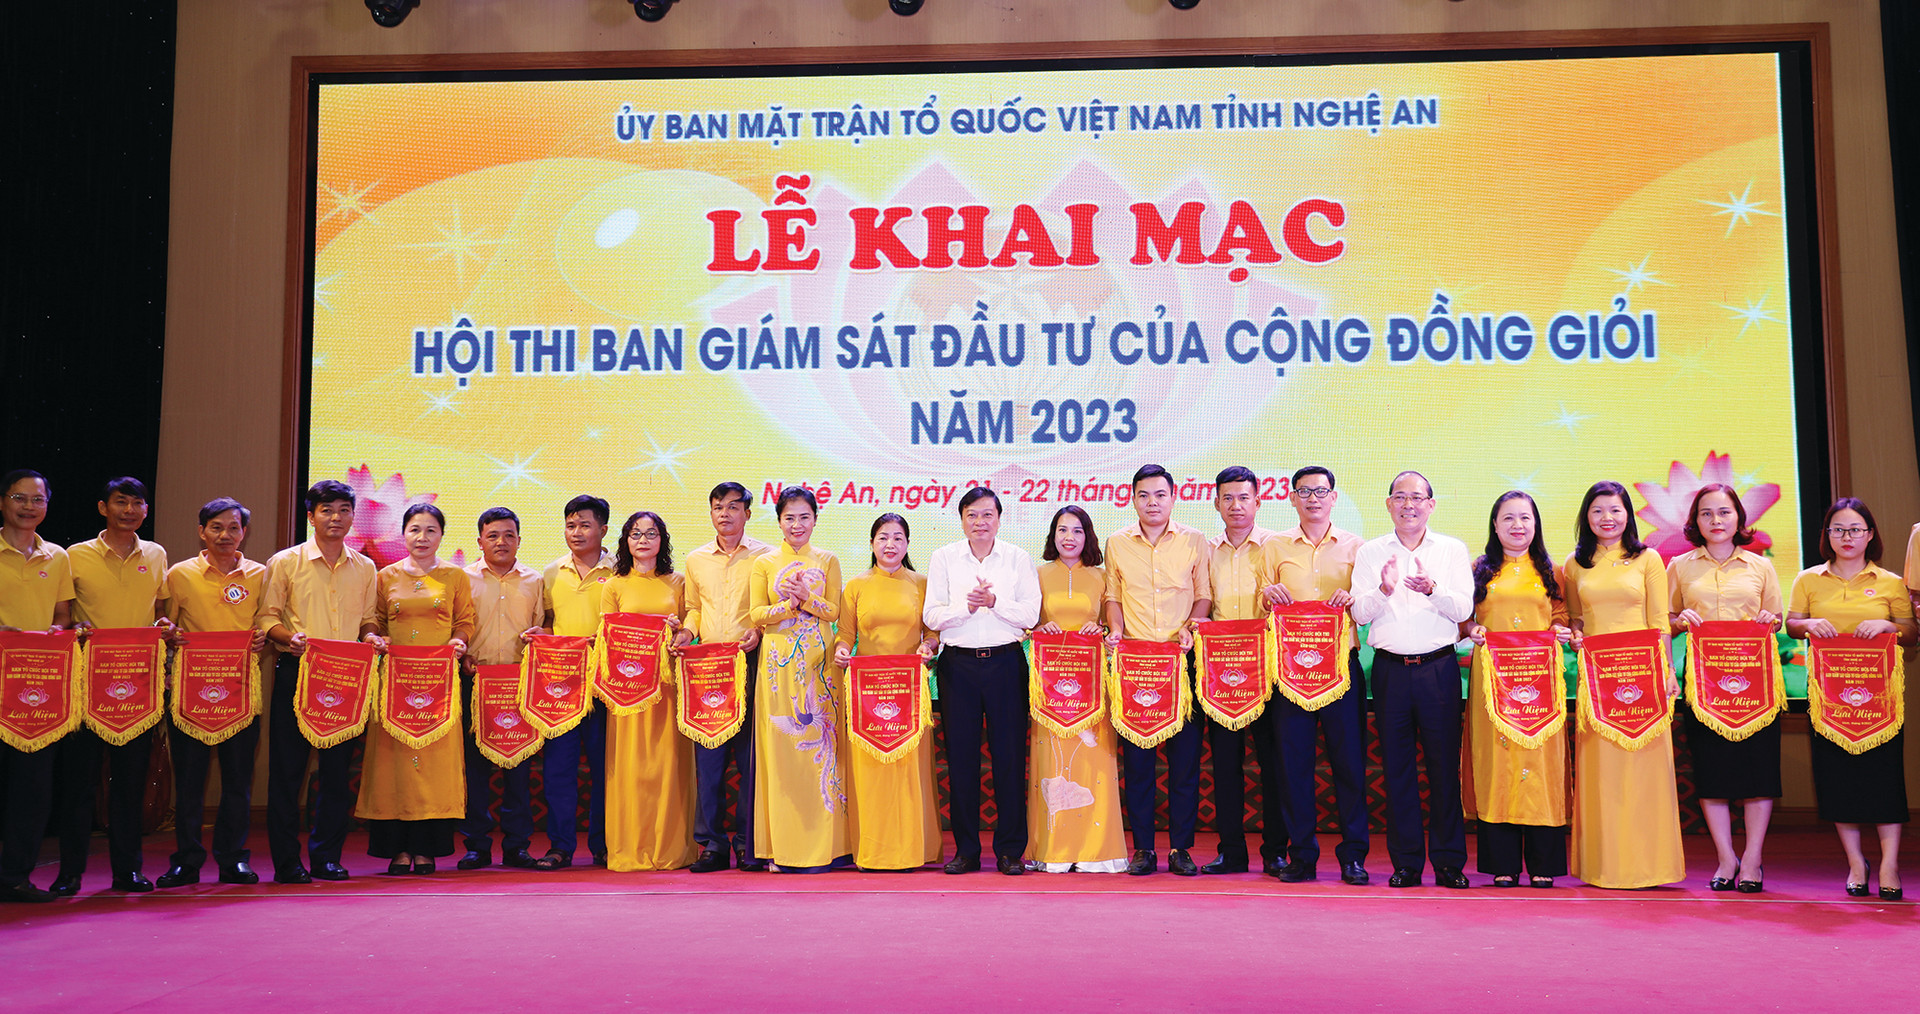 Phó Chủ tịch UBTƯ MTTQ Việt Nam Hoàng Công Thủy cùng đại diện lãnh đạo tỉnh Nghệ An trao cờ lưu niệm cho các đội tham dự hội thi.